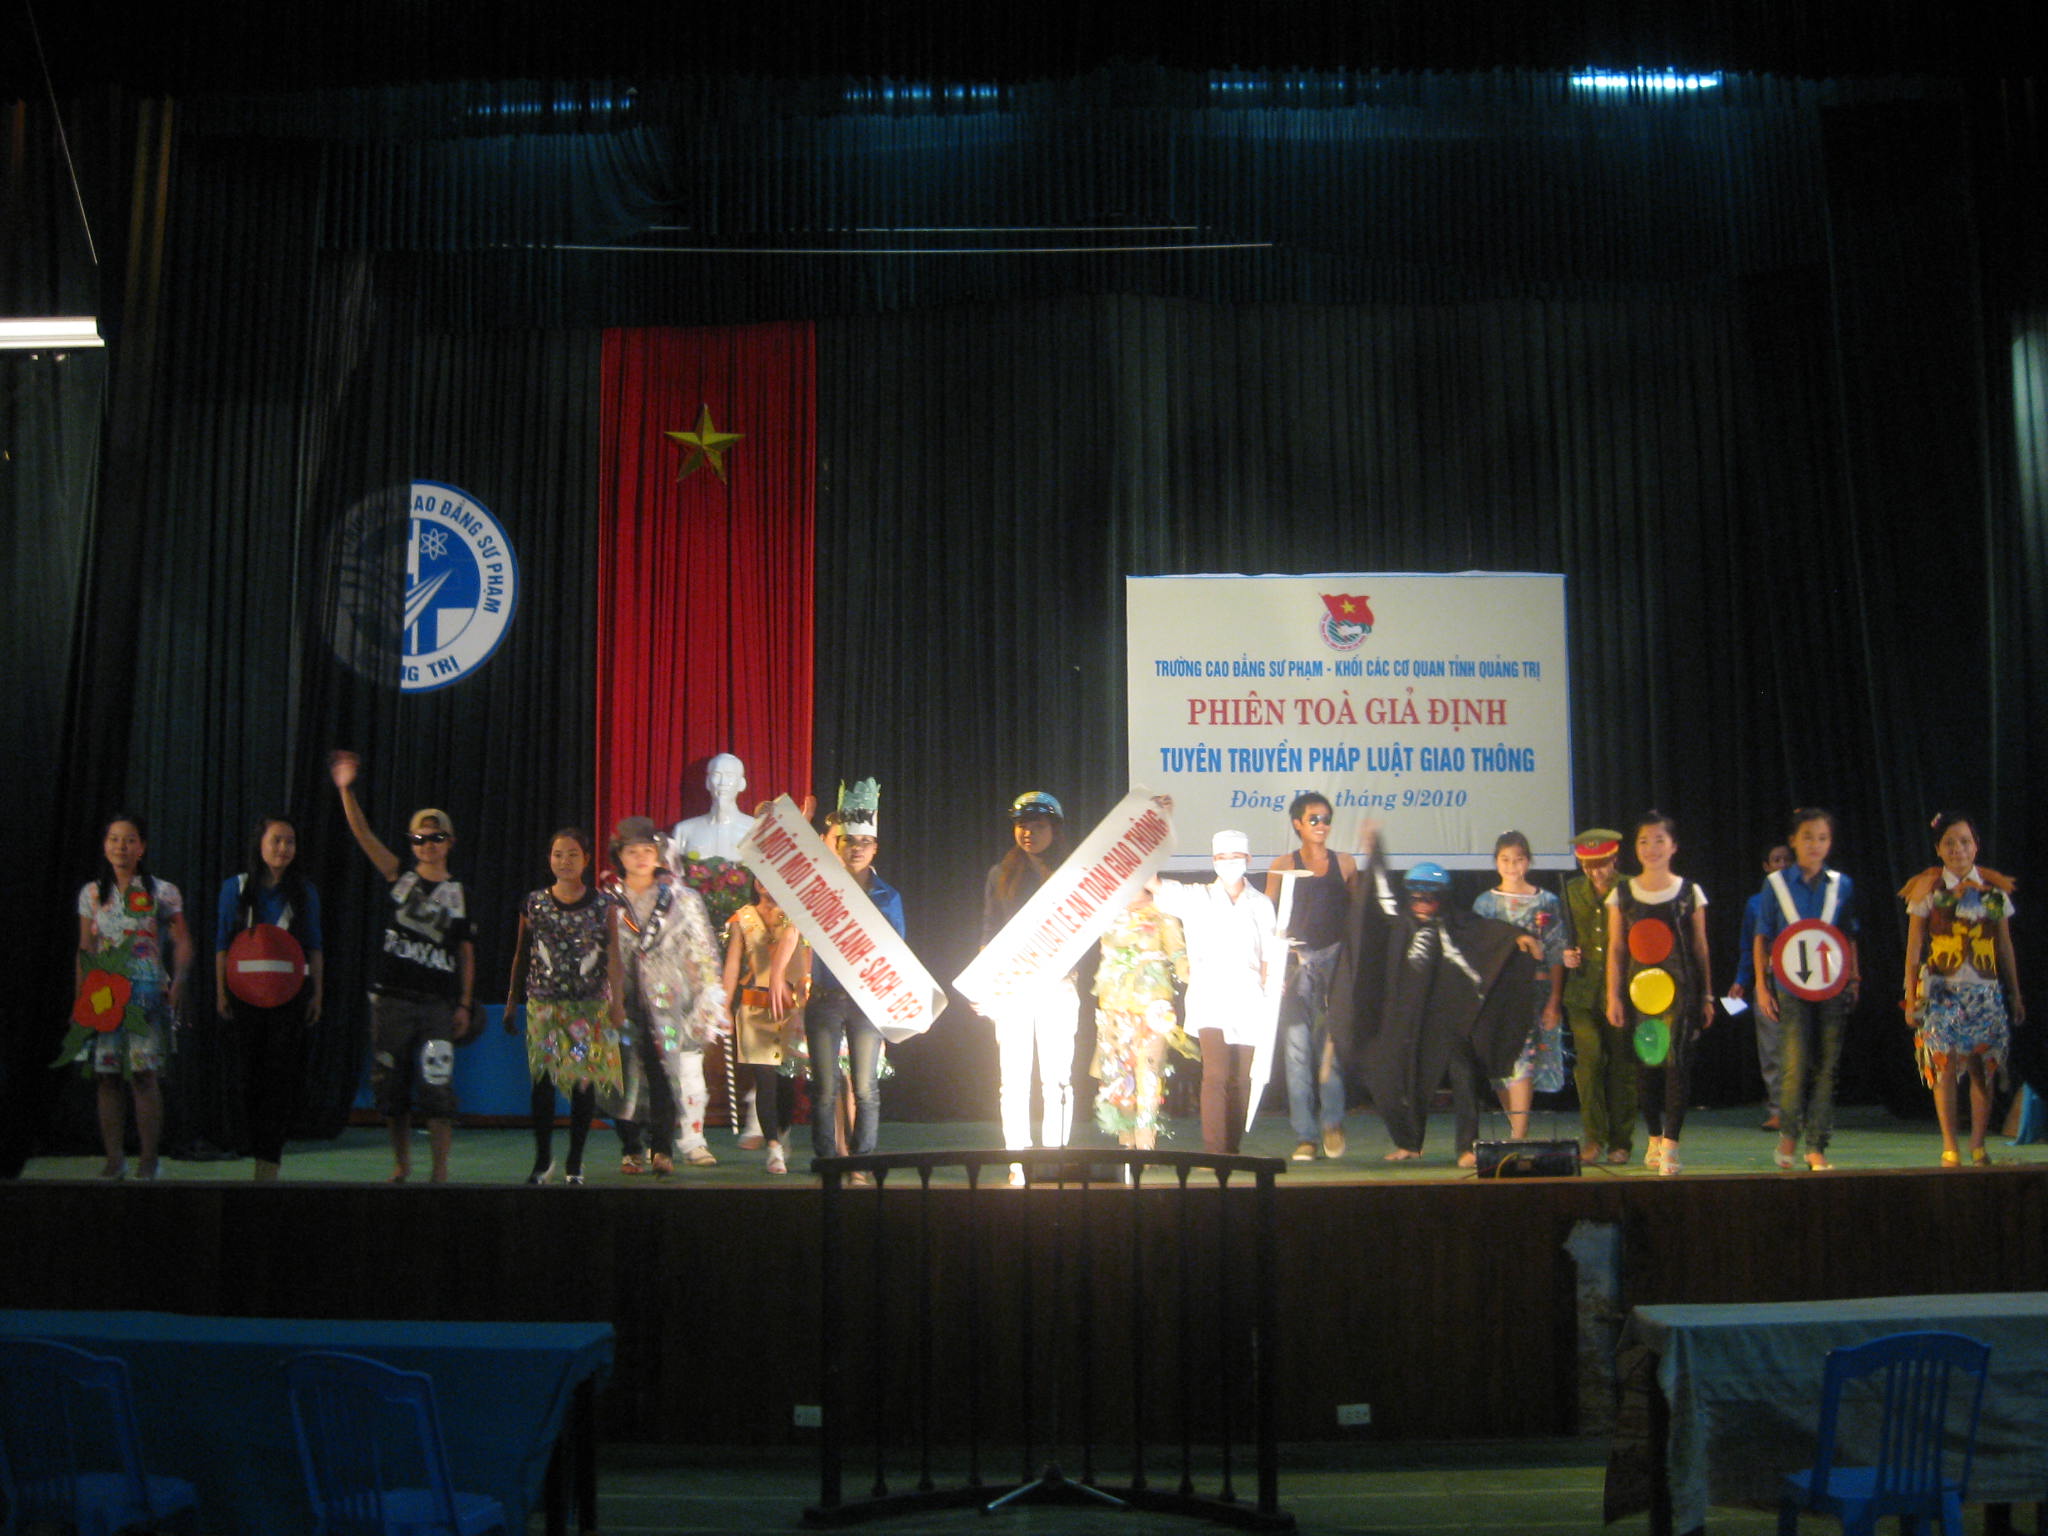 Đoàn trường tổ chức tuyên truyền pháp luật giao thông trong HSSV năm 2010